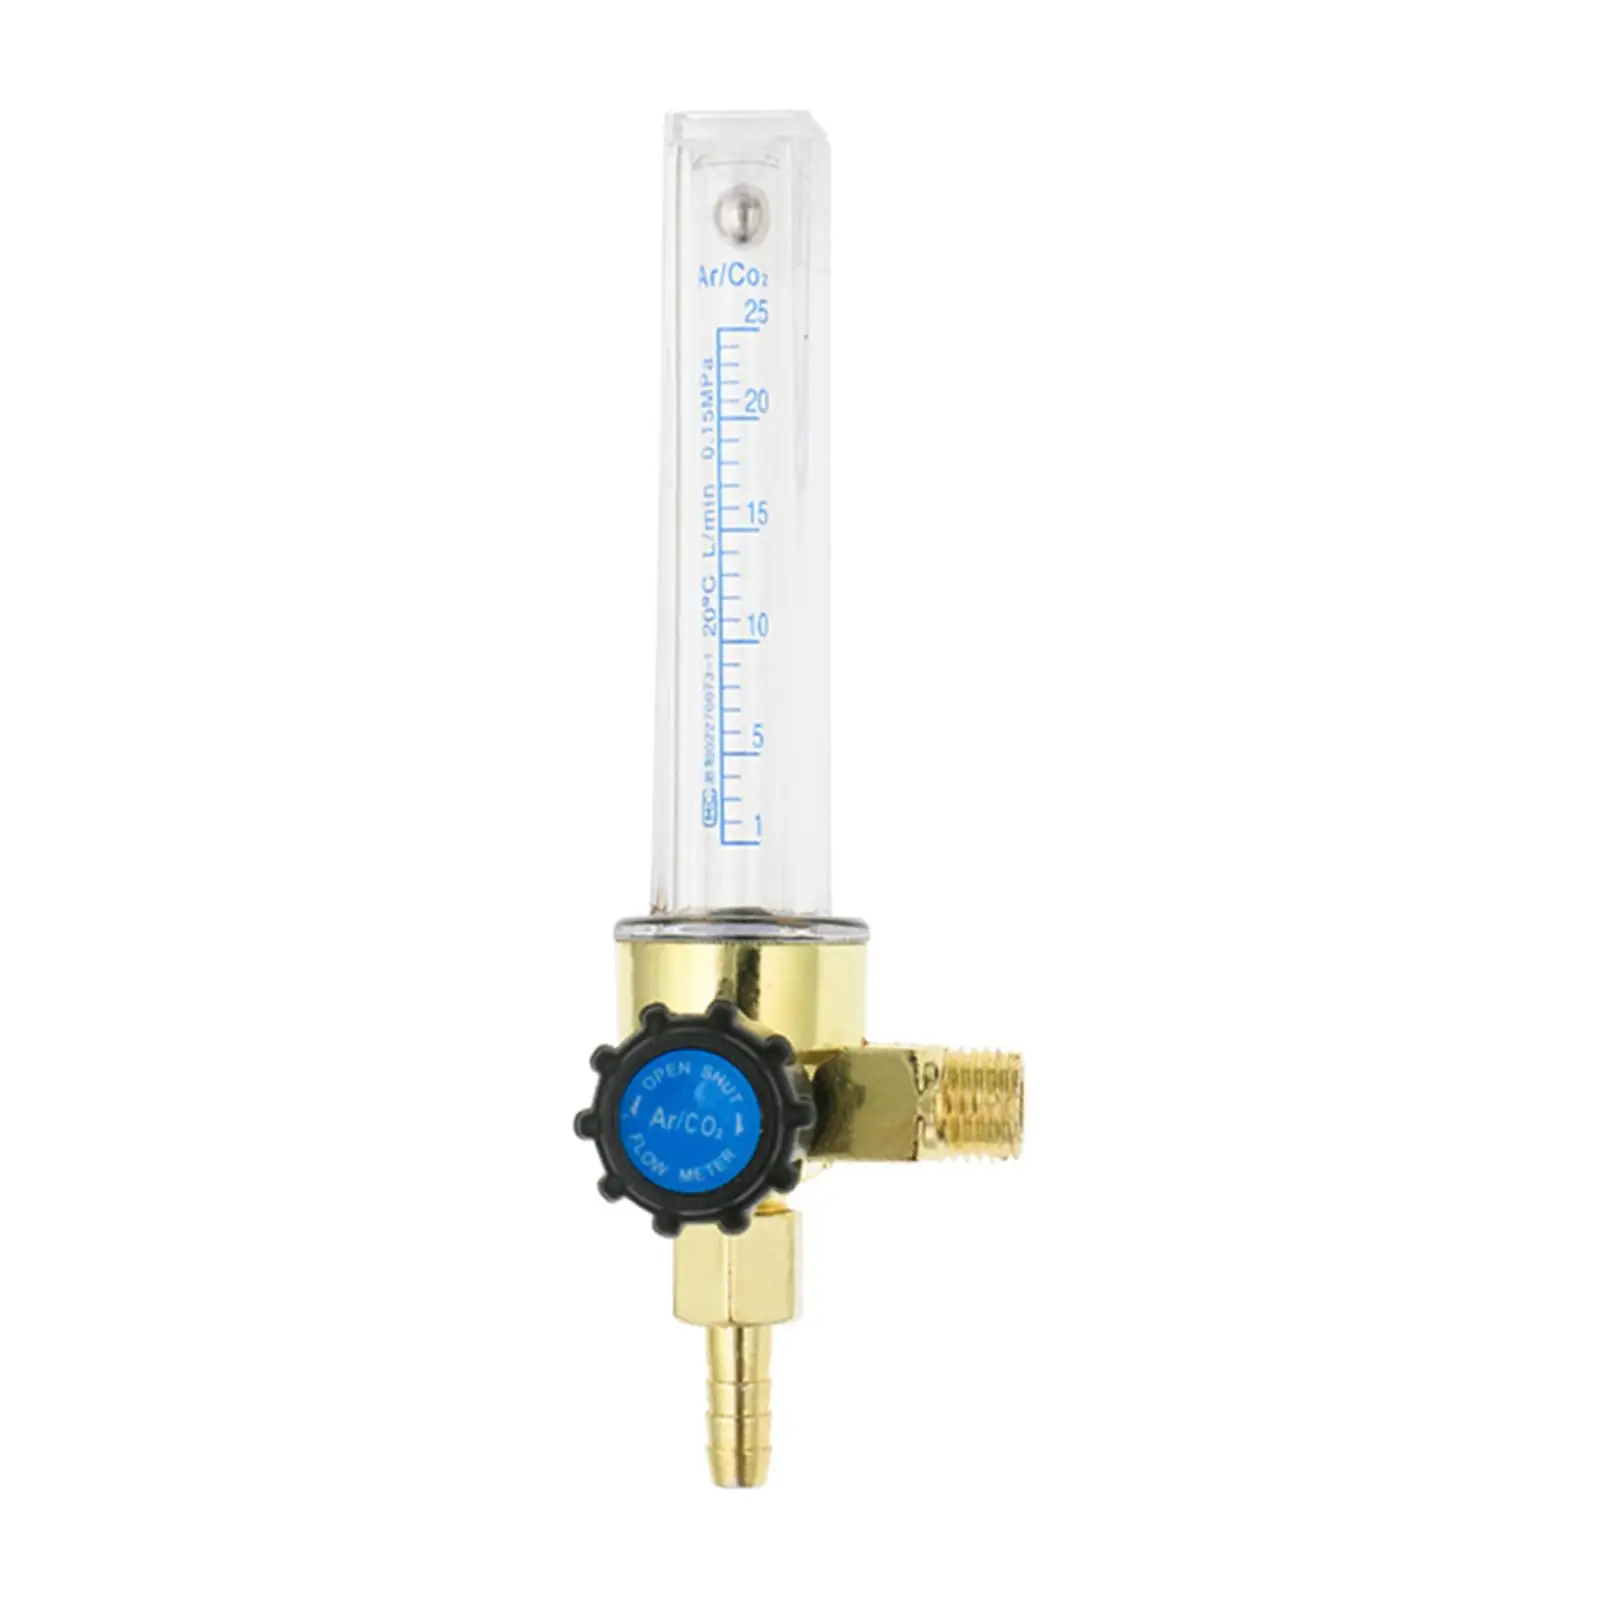 Argon CO2 Gas Flow Rate Gas Shielding Welding Tool Flowmeter